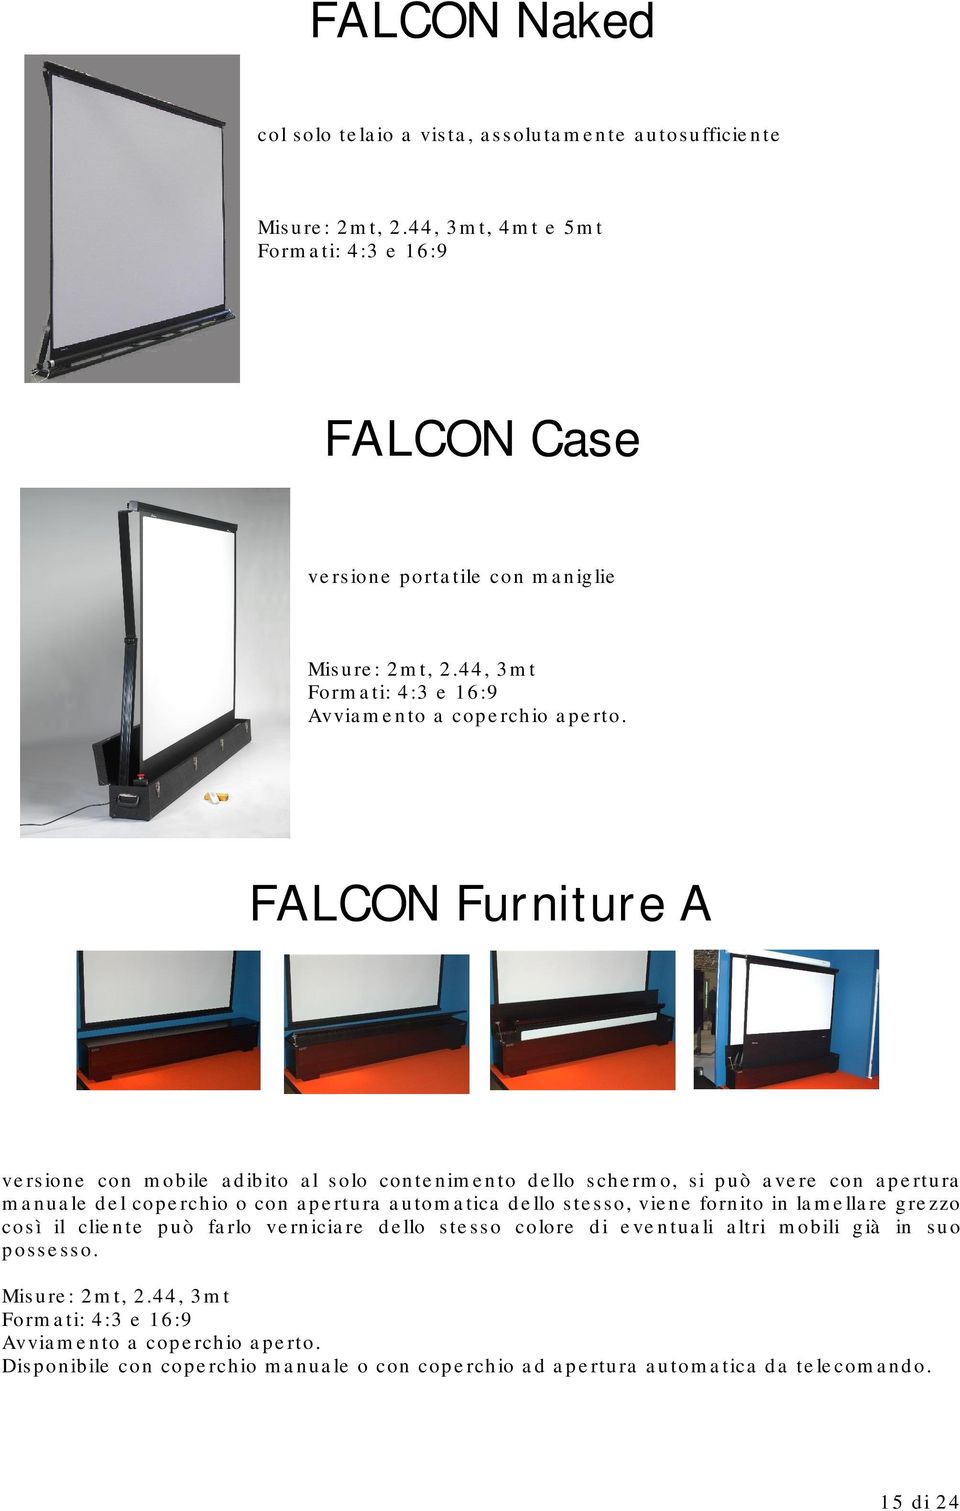 FALCON Furniture A versione con mobile adibito al solo contenimento dello schermo, si può avere con apertura manuale del coperchio o con apertura automatica dello stesso, viene